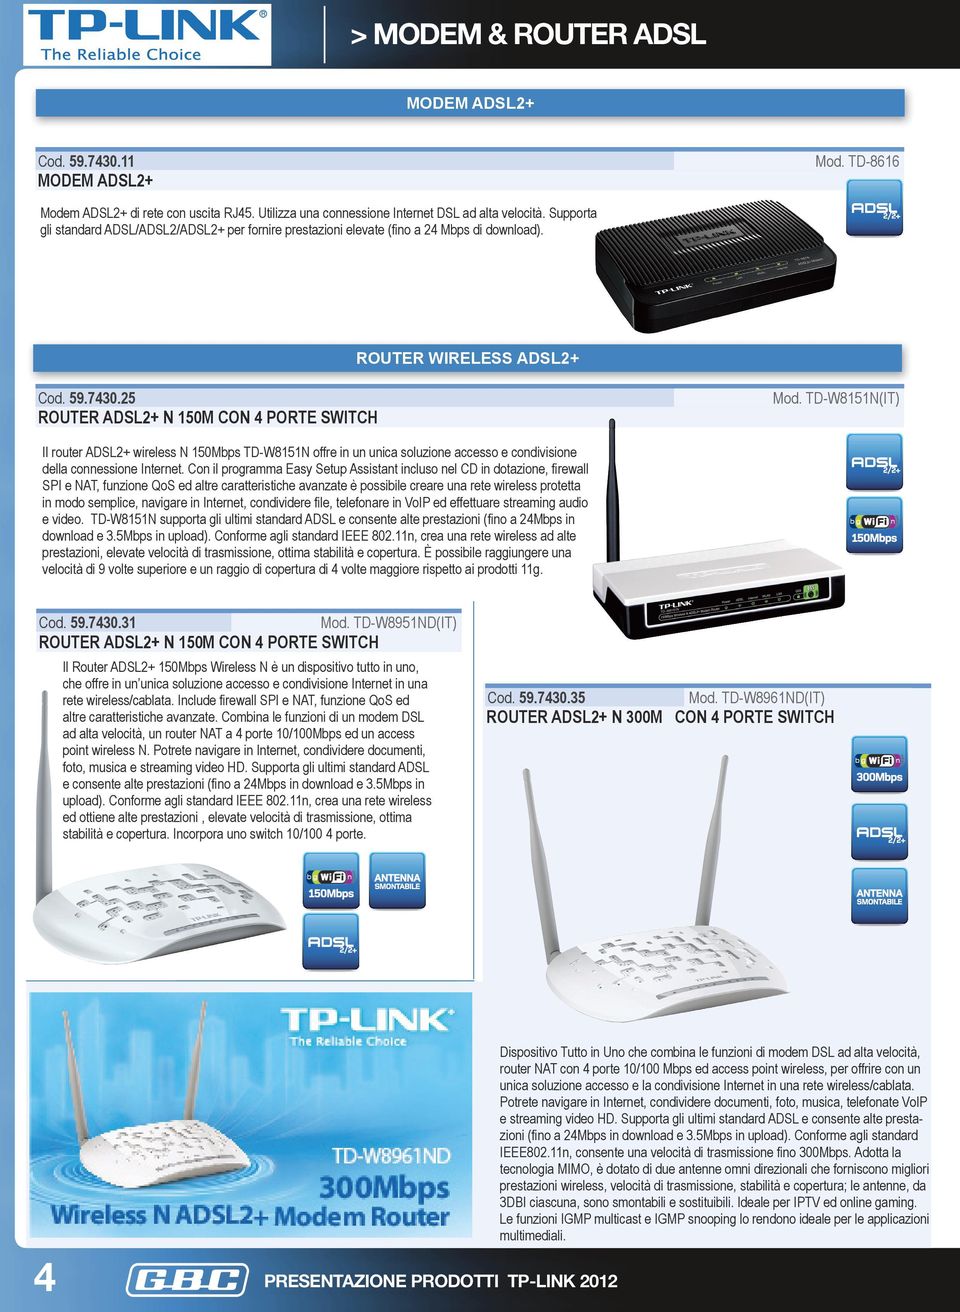 TD-W8151N(IT) ROUTER ADSL2+ N 150M CON 4 PORTE SWITCH Il router ADSL2+ wireless N 150Mbps TD-W8151N offre in un unica soluzione accesso e condivisione della connessione Internet.